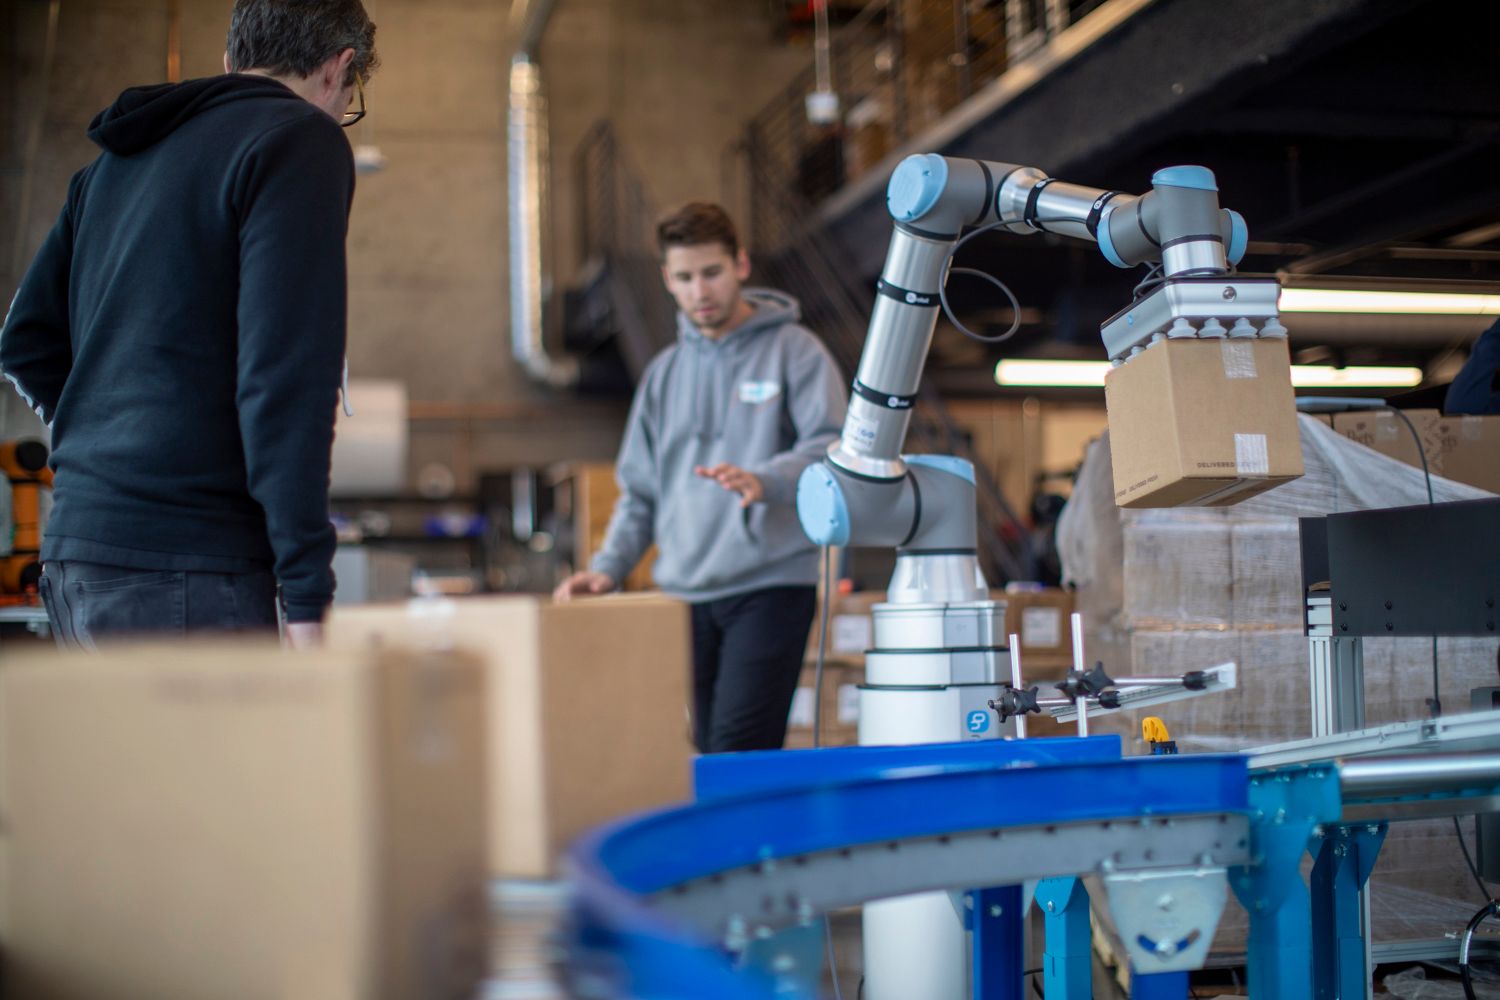 Rapid Robotics Universal Robots Partner to Deploy | Packaging Strategies